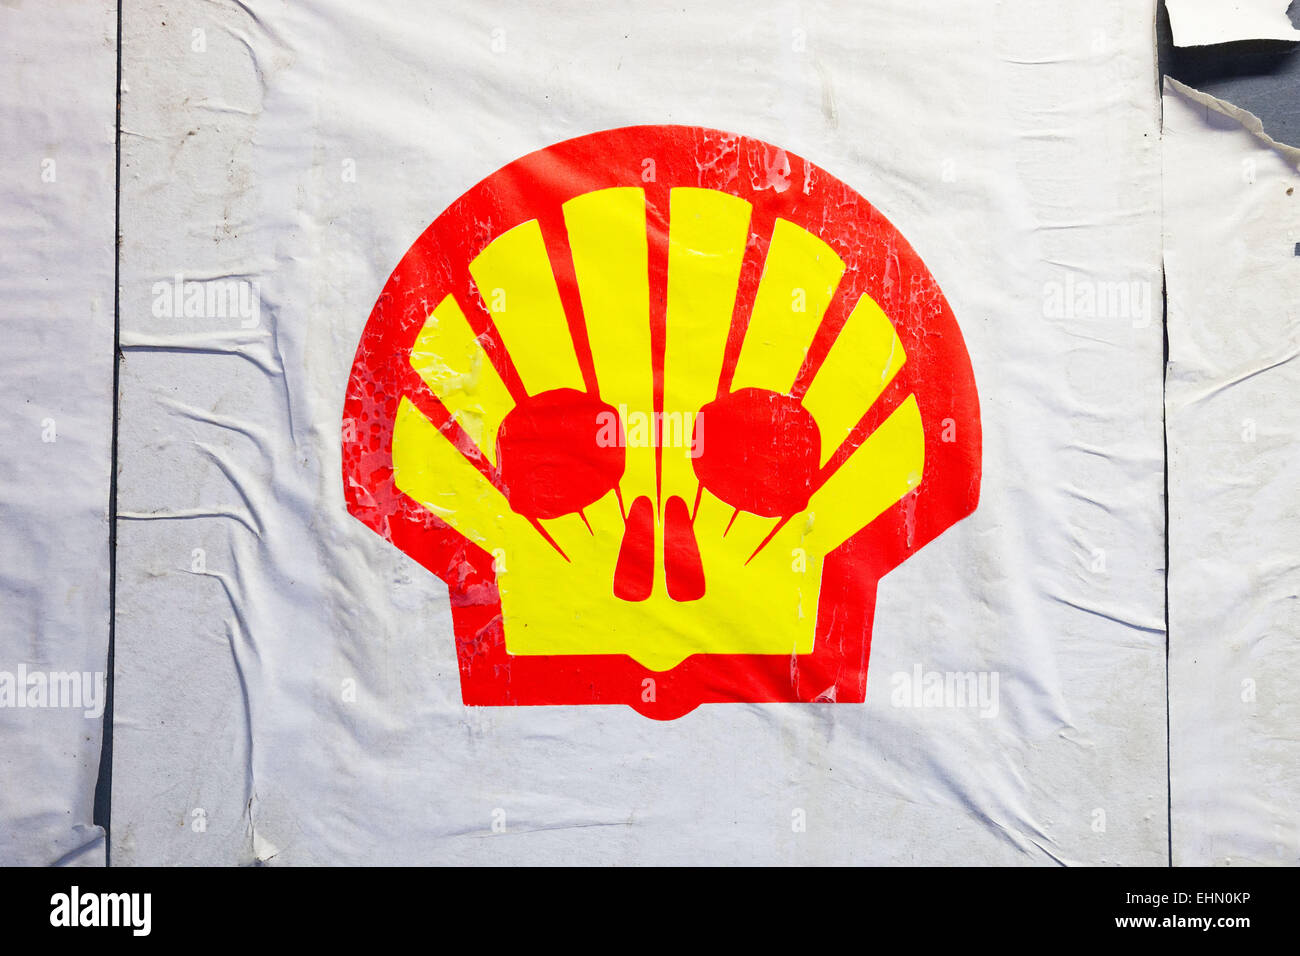 El logotipo de la compañía petrolera Shell secuestrada por activistas ambientales denunciando la responsabilidad de la contaminación de petróleo de Shell. Foto de stock